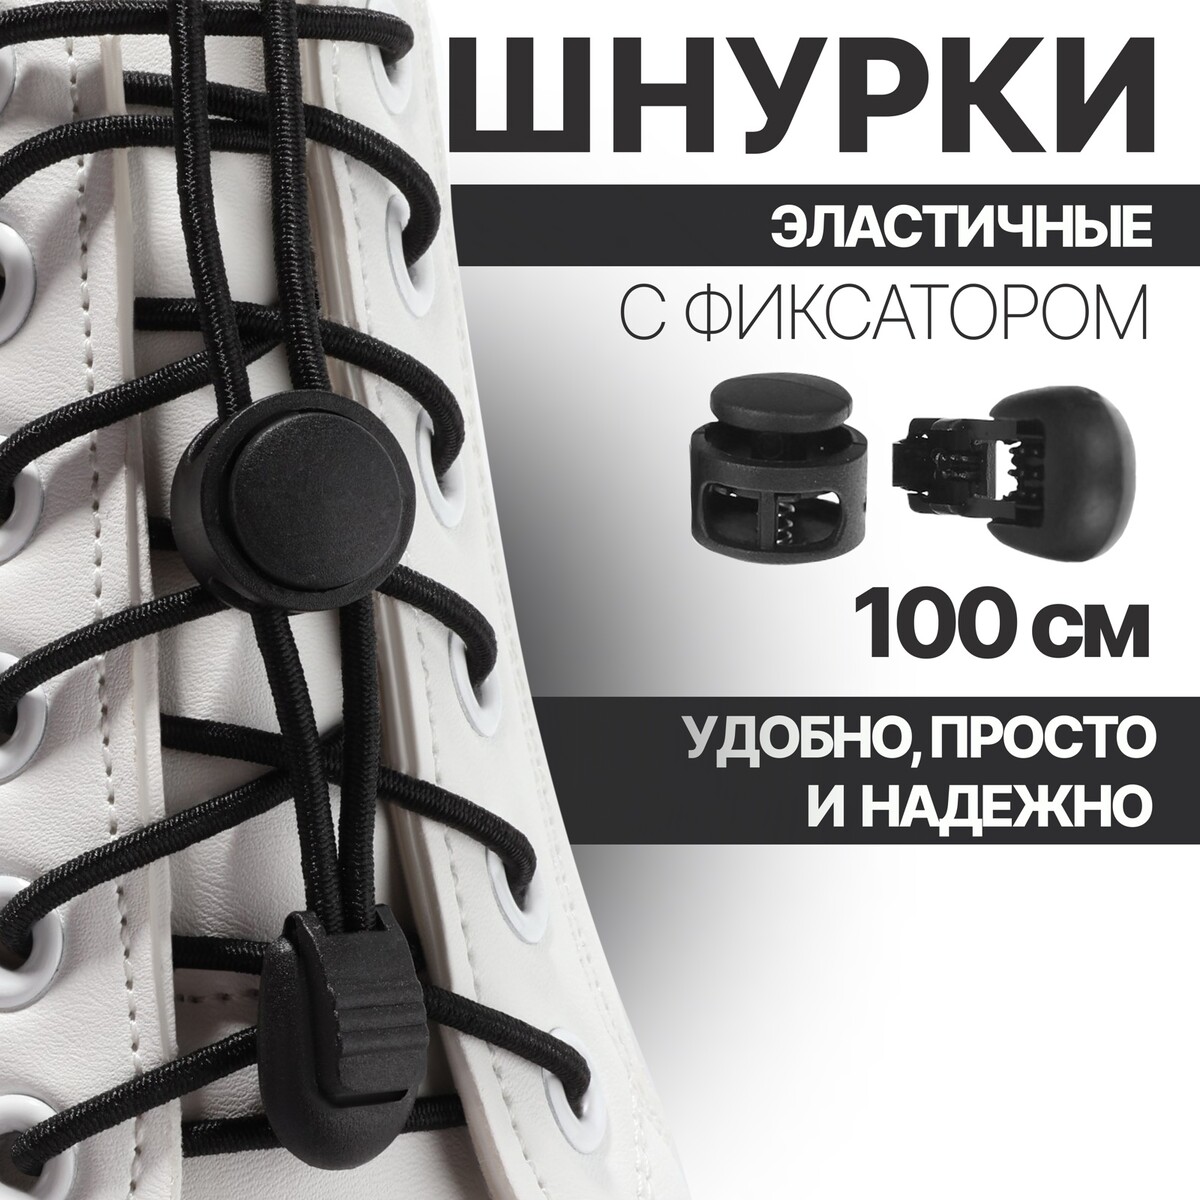 Шнурки для обуви, пара, круглые, с фиксатором, эластичные, d = 3 мм, 100 см, цвет черный рулетка 10 м обрезиненный пластик 24 мм с фиксатором spe13806 76 10